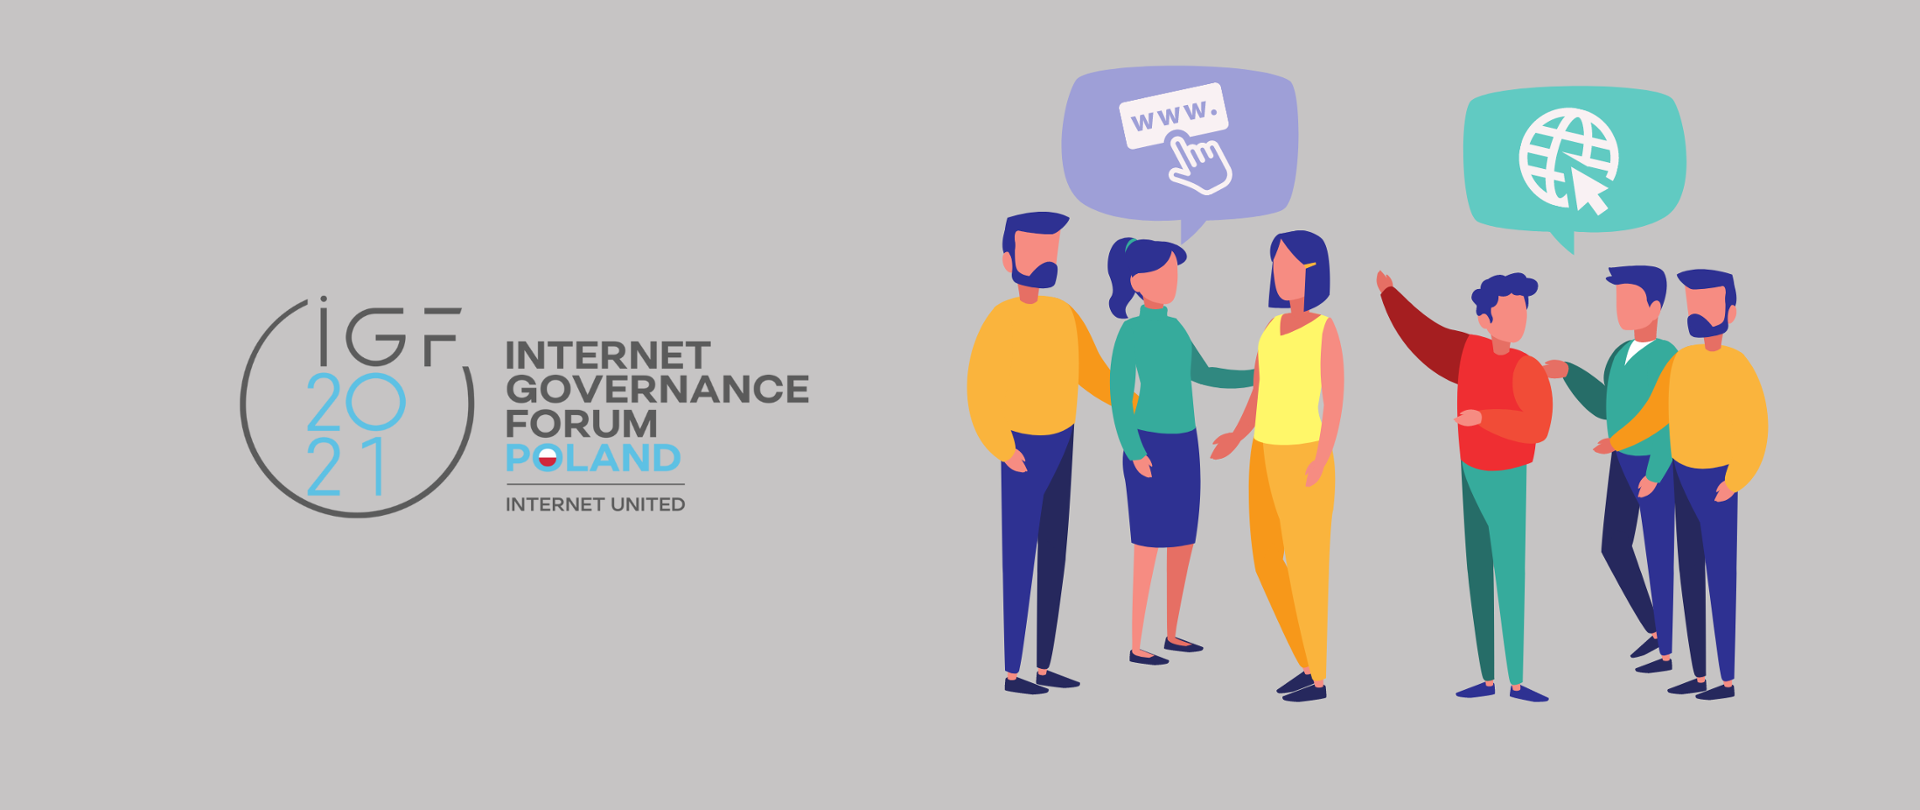 Kolorowa grafika wektorowa na szarym tle. Po lewej stronie - logo IGF2021 Internet Governance Forum Poland, Internet United. Po prawej sześć kolorowo ubranych, rozmawiających osób.